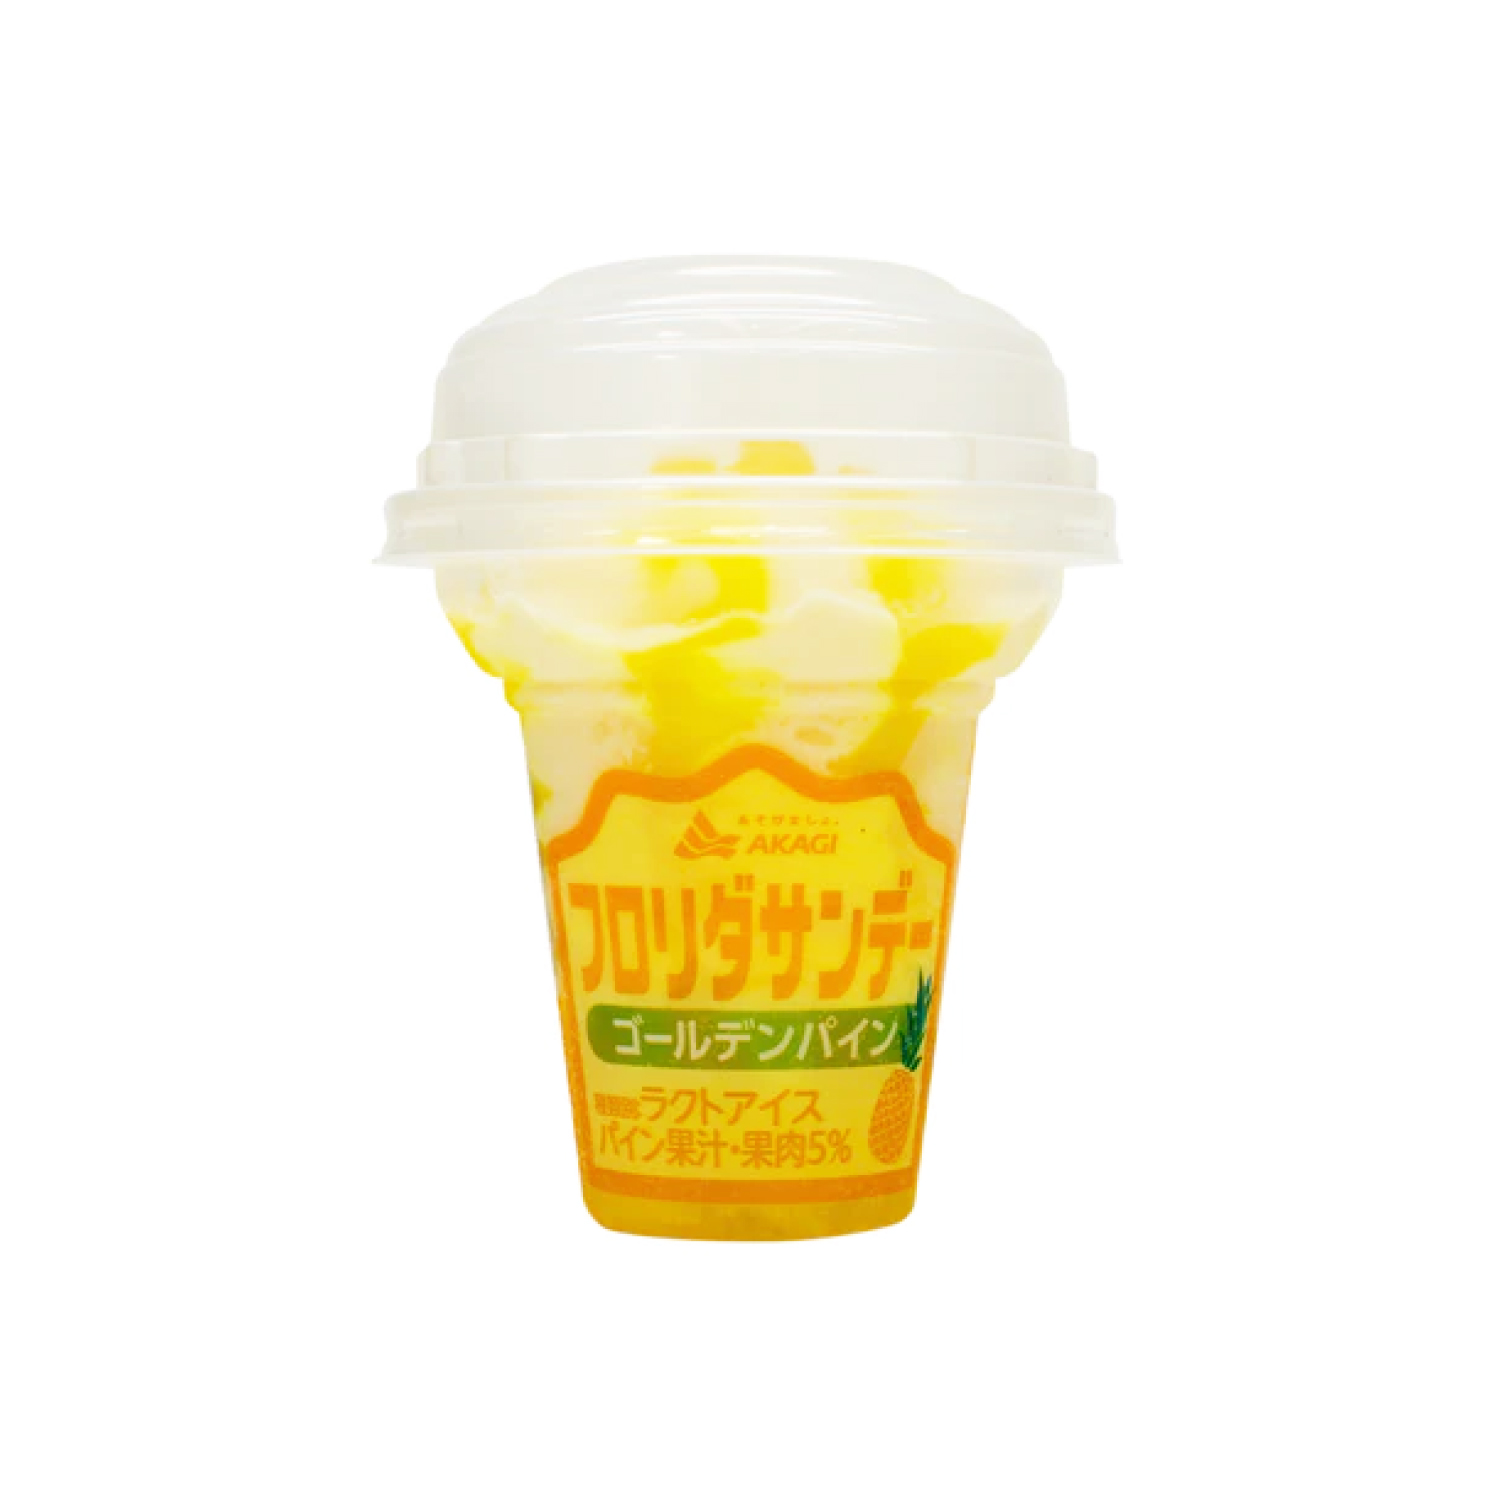 Akagi Florida SUNDAE Goldenpine 210ml-eBest-Ice cream,Snacks & Confectionery